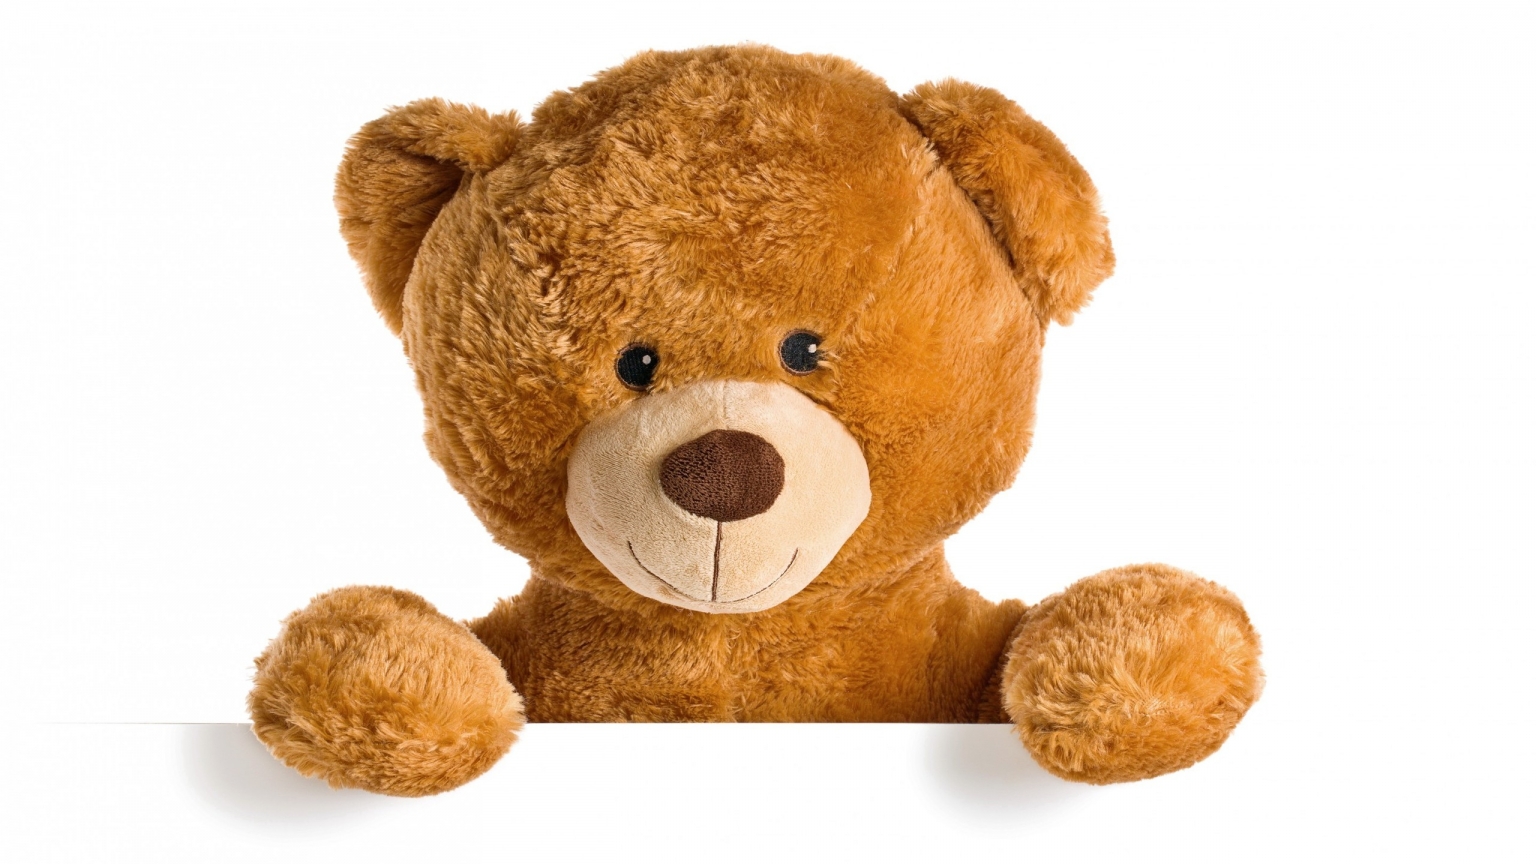 Cute Teddy Bear for 1536 x 864 HDTV resolution